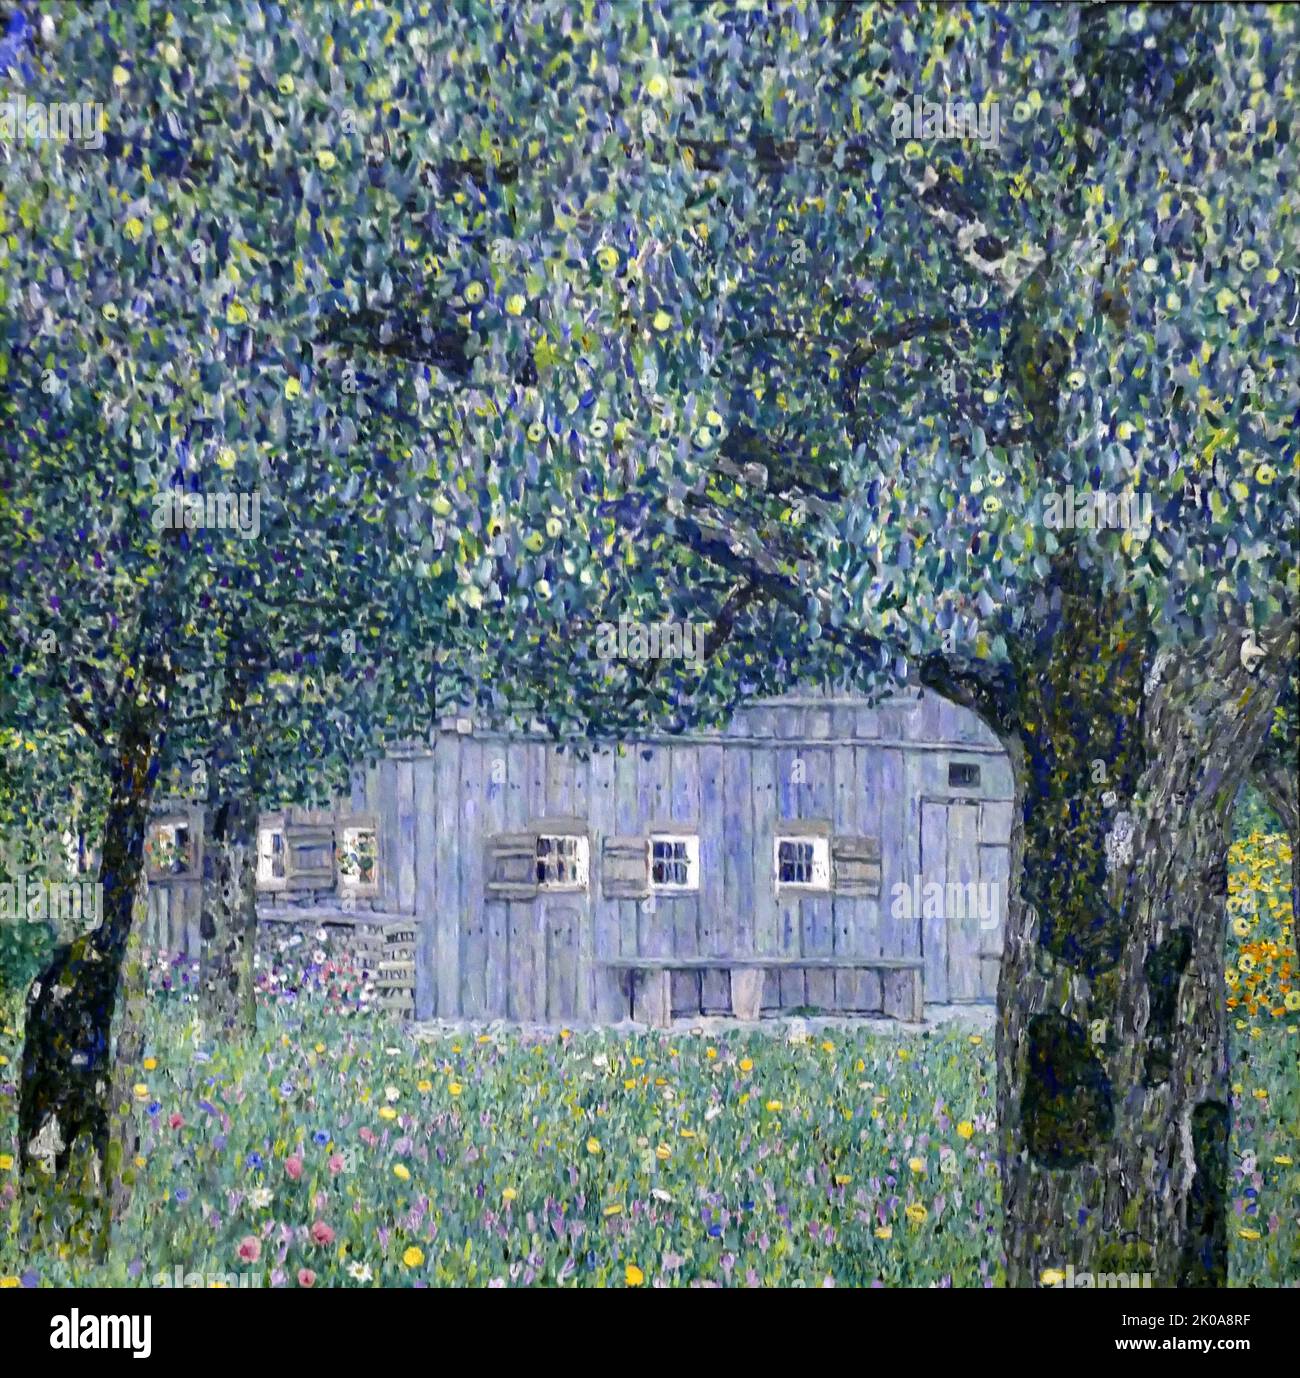 Ferme à Buchberg (ferme autrichienne supérieure) 1911, par Gustav Klimt (14 juillet 1862 - 6 février 1918) un peintre symboliste autrichien et l'un des membres les plus éminents du mouvement de la sécession de Vienne. Klimt est réputé pour ses peintures, peintures murales, croquis et autres objets d'art. Banque D'Images